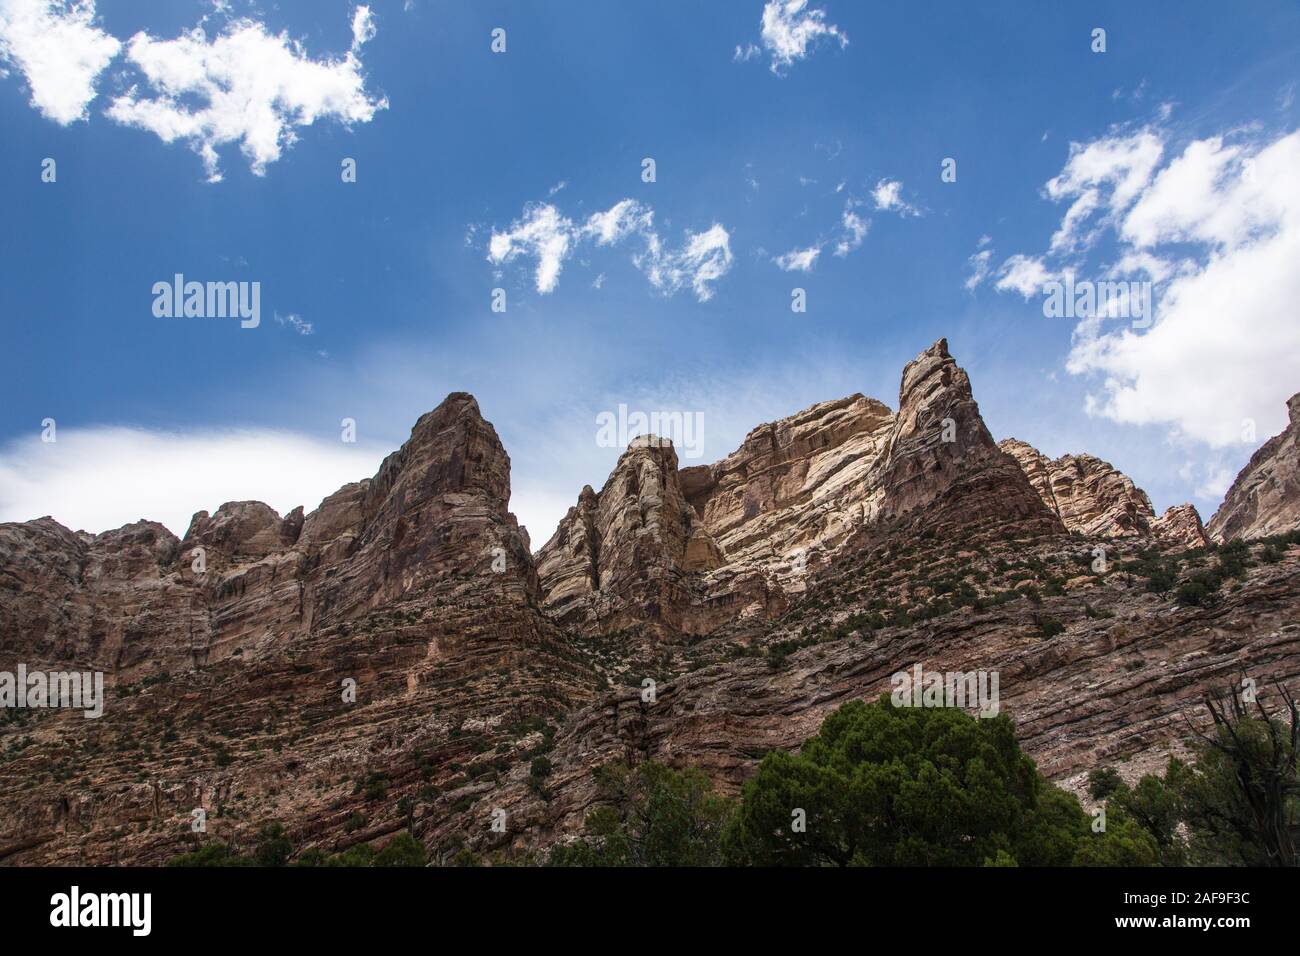 Les formations rocheuses et les falaises de Split montagne Canyon sur la rivière Green dans Dinosaur National Monument dans le nord de l'Utah. Banque D'Images